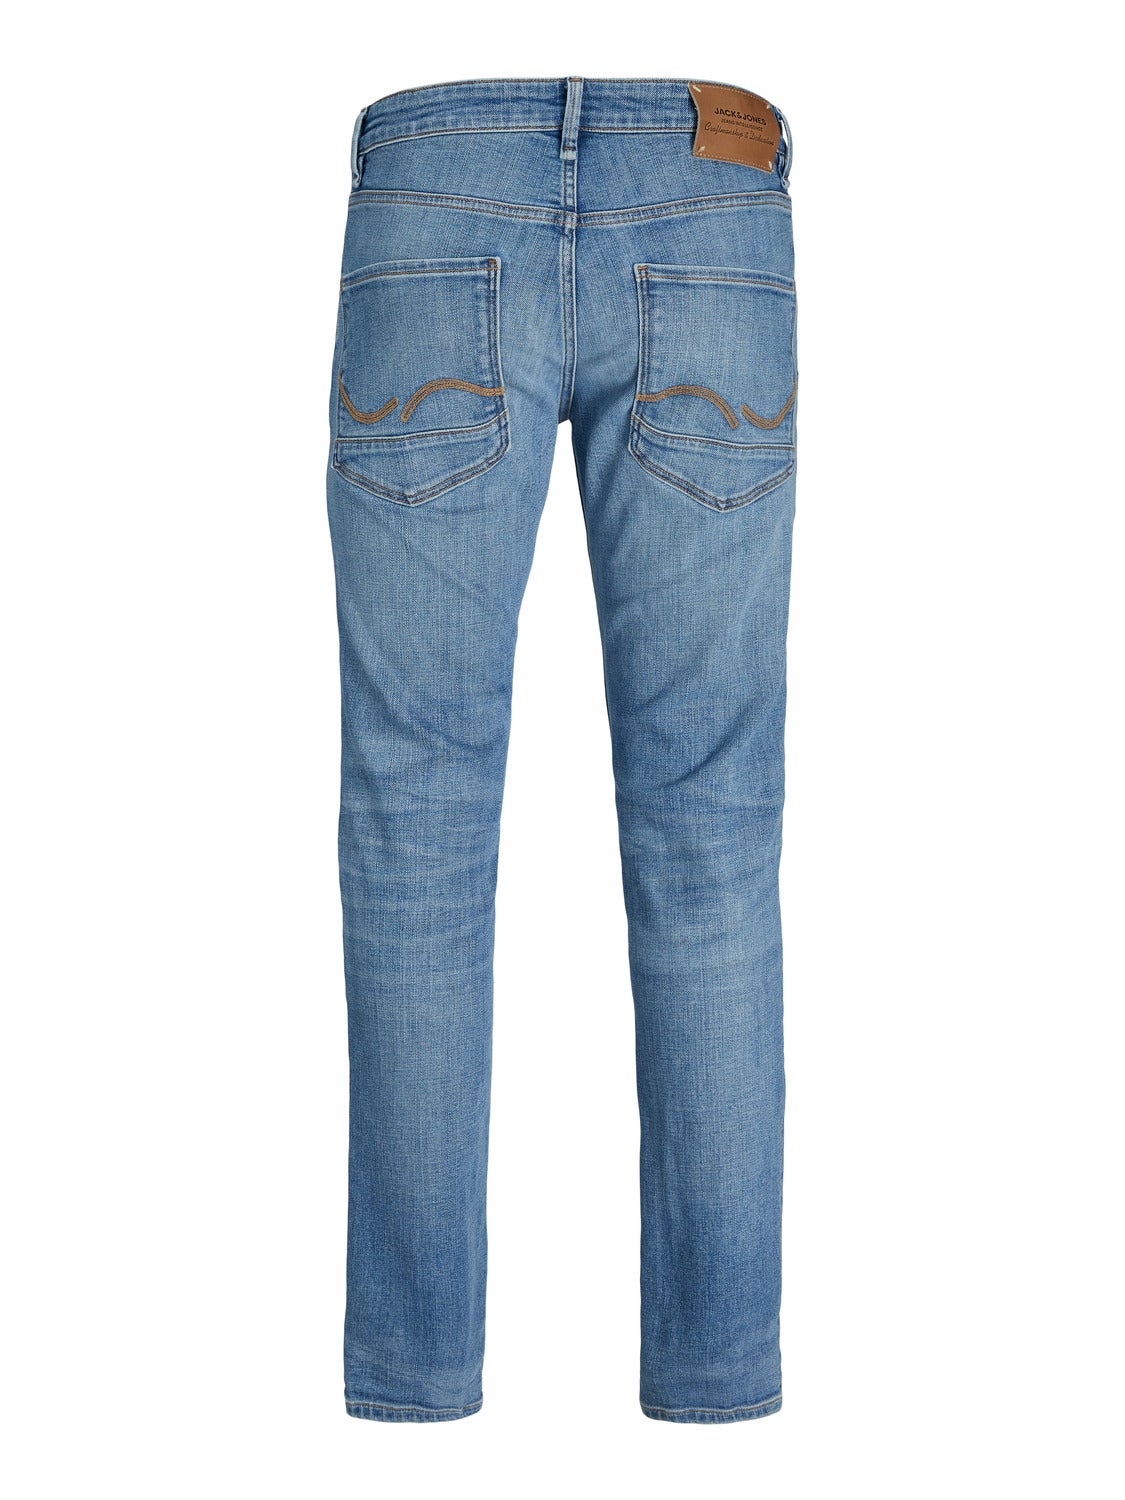 Jack & Jones liam skinny jeans in mid blue | ASOS